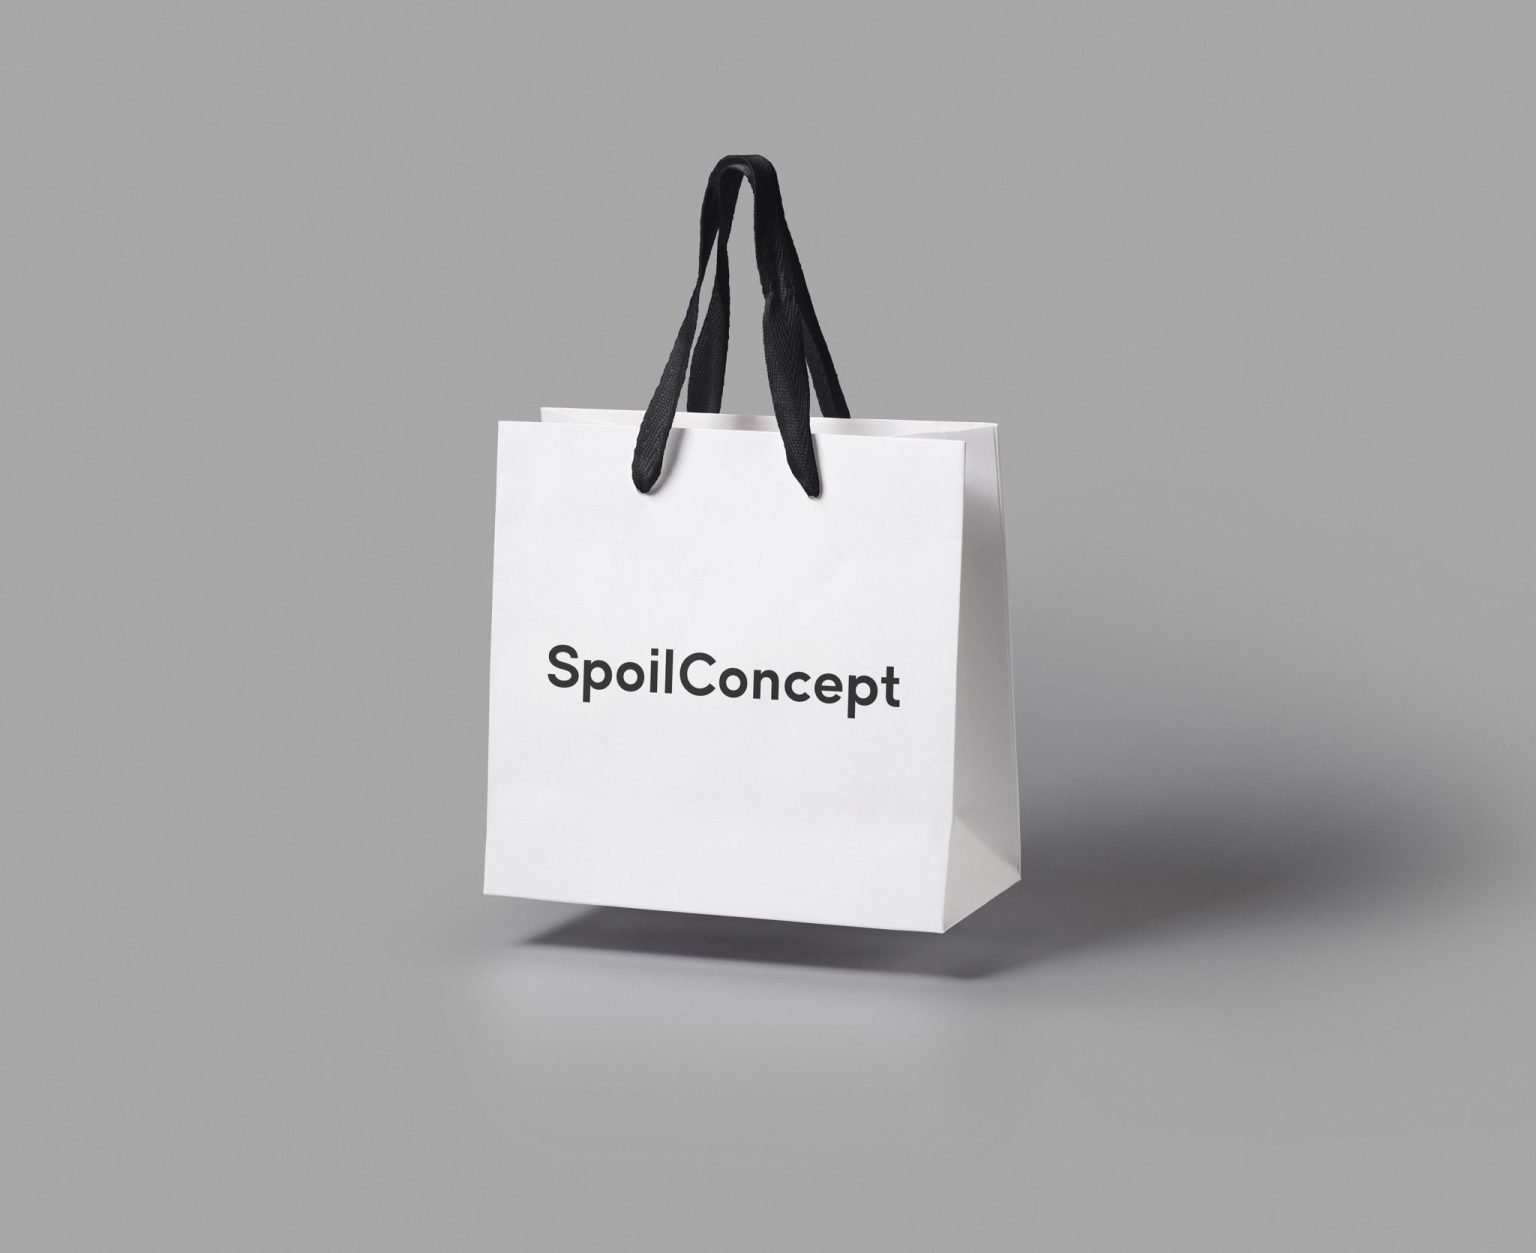 SpoilConcept / Identity Design